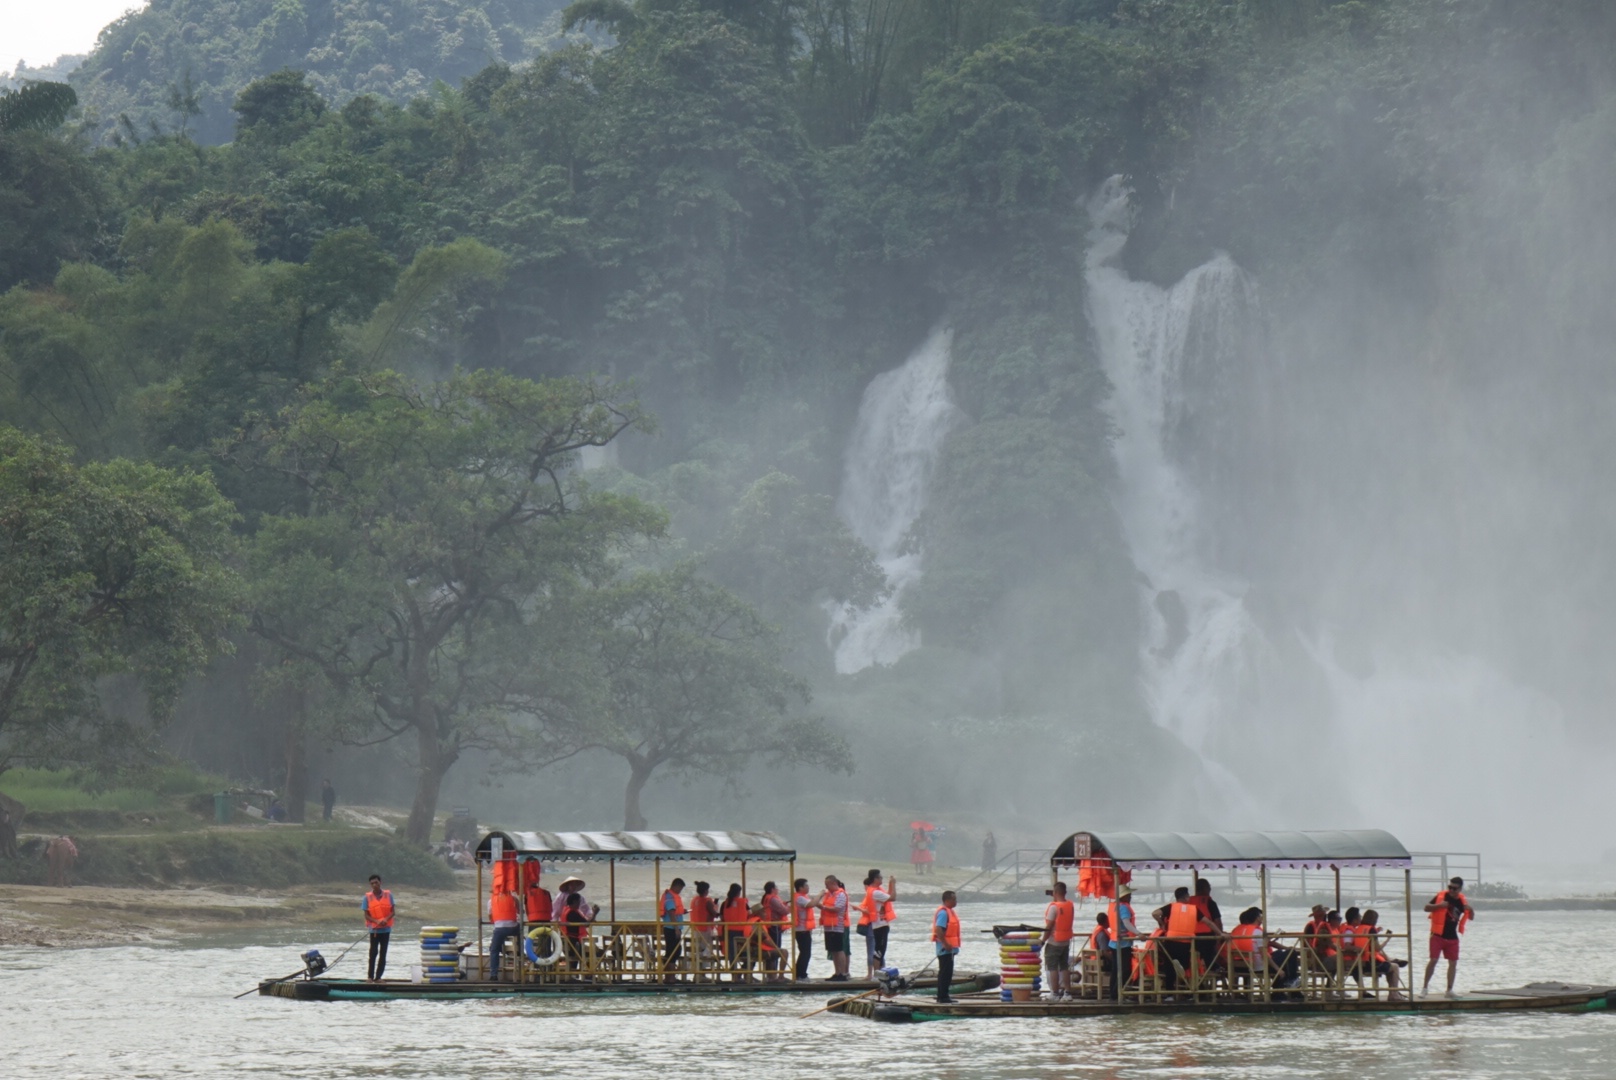 遊人可以坐小木筏在河上近距離觀賞瀑布。